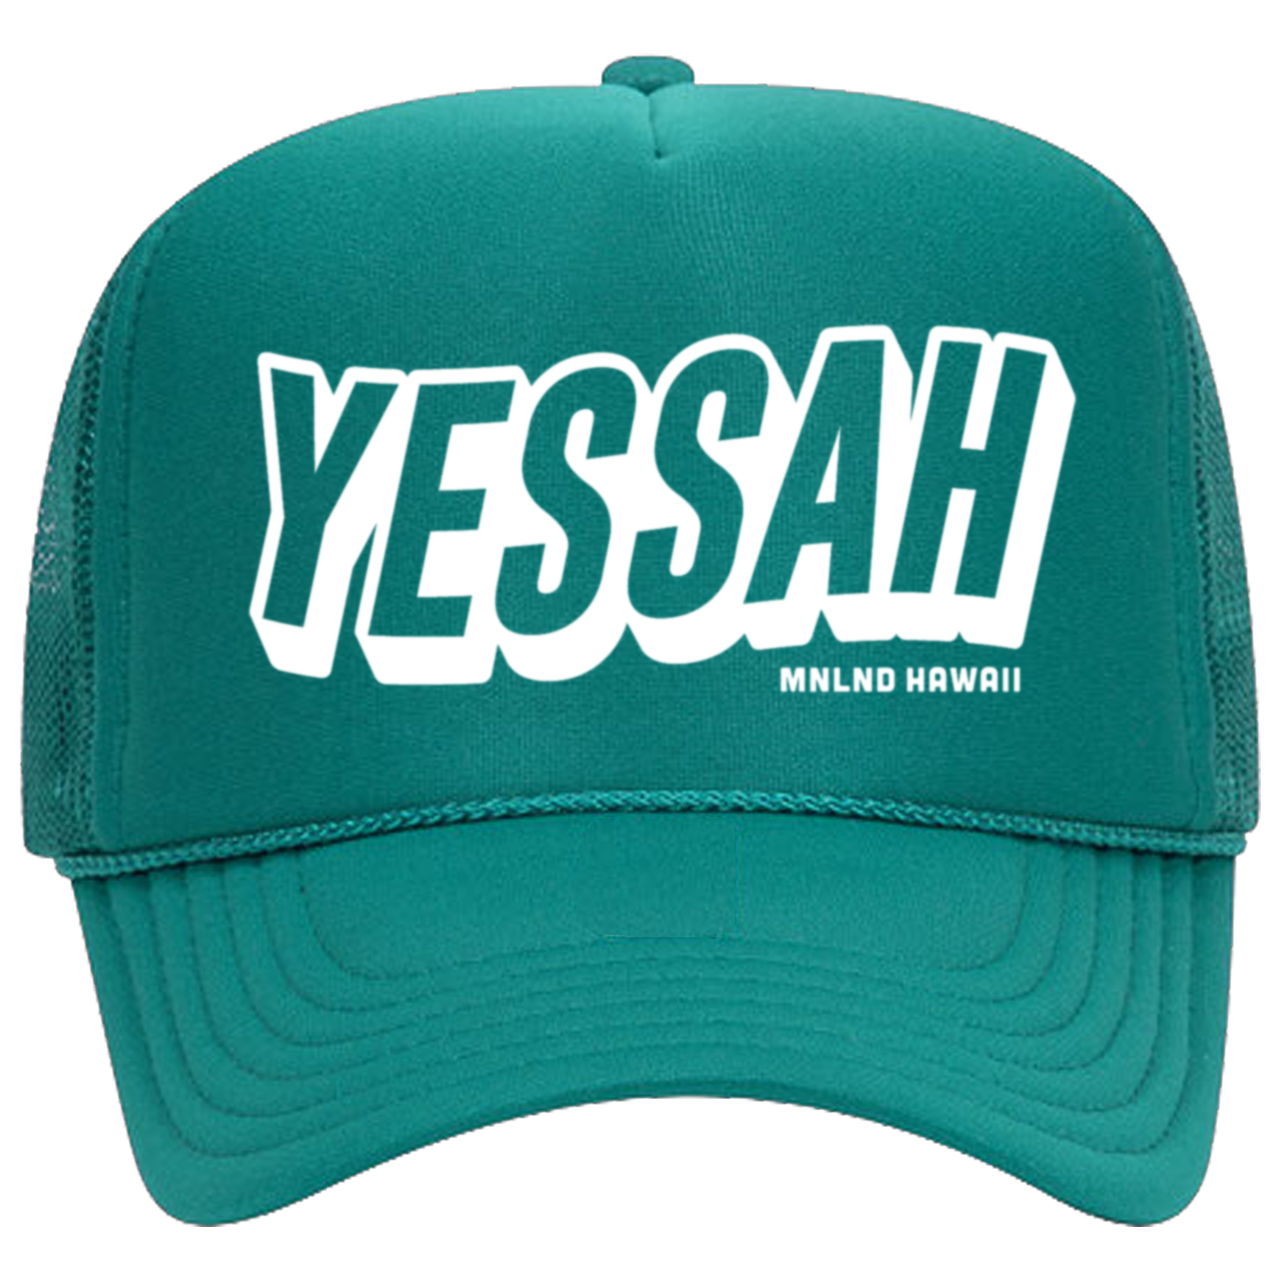 Yessah - Trucker Hat